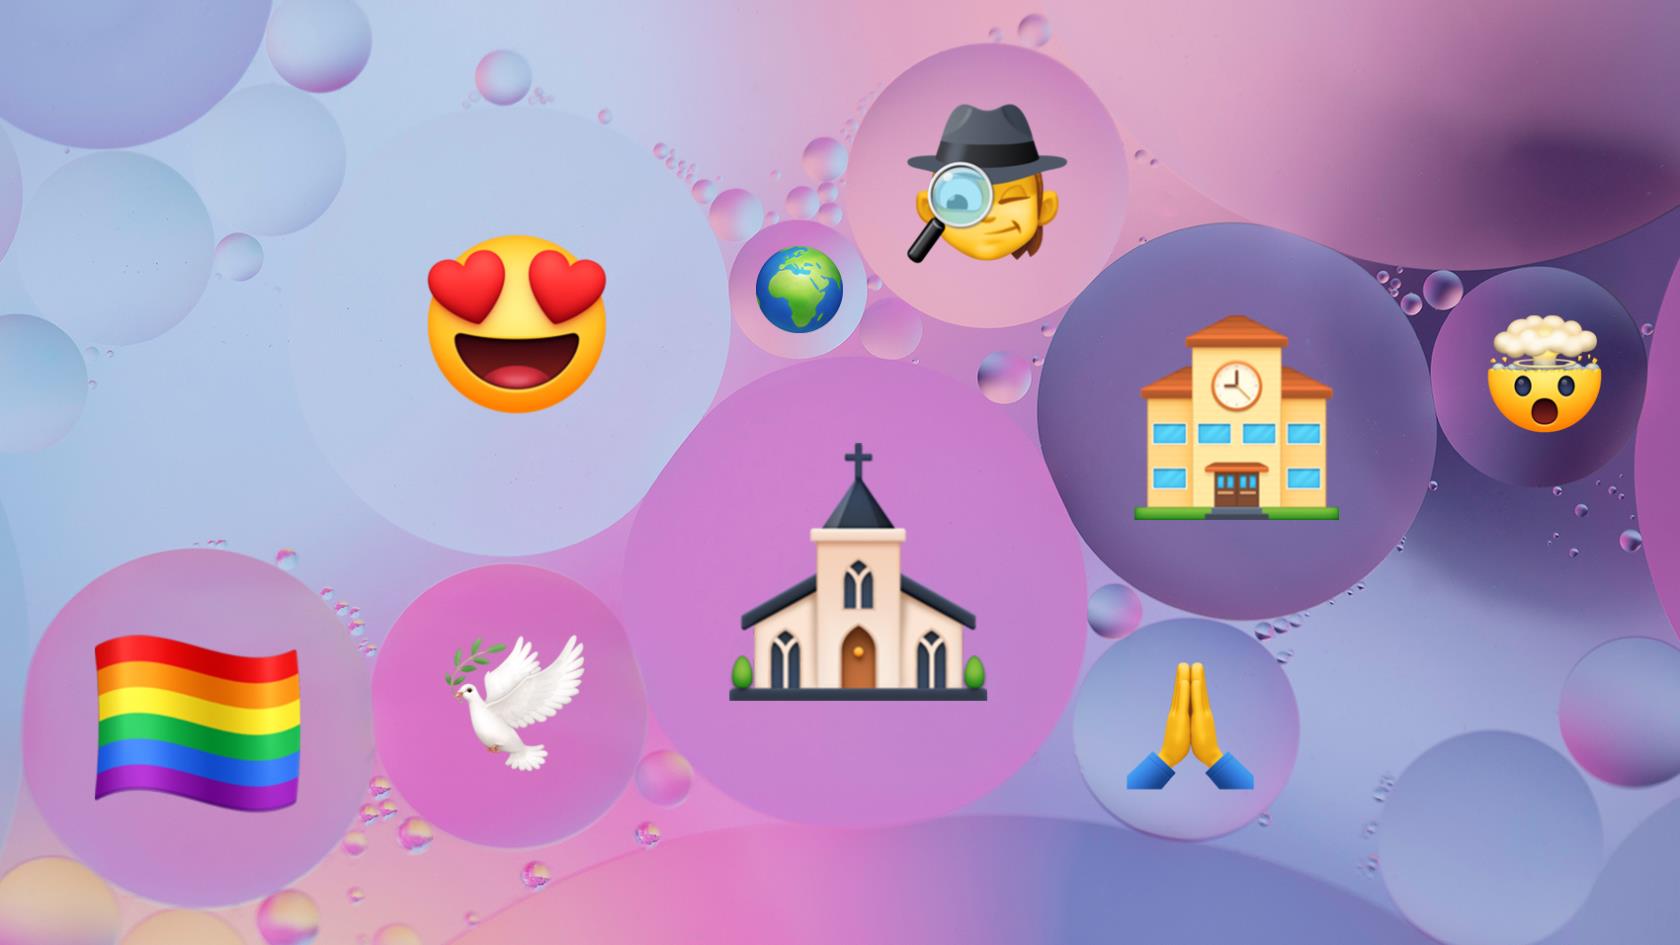 Abstrakt bild med bubblor. I bubblorna finns olika emojis bl.a. en skola, en kyrka och en regnbågsflagga.